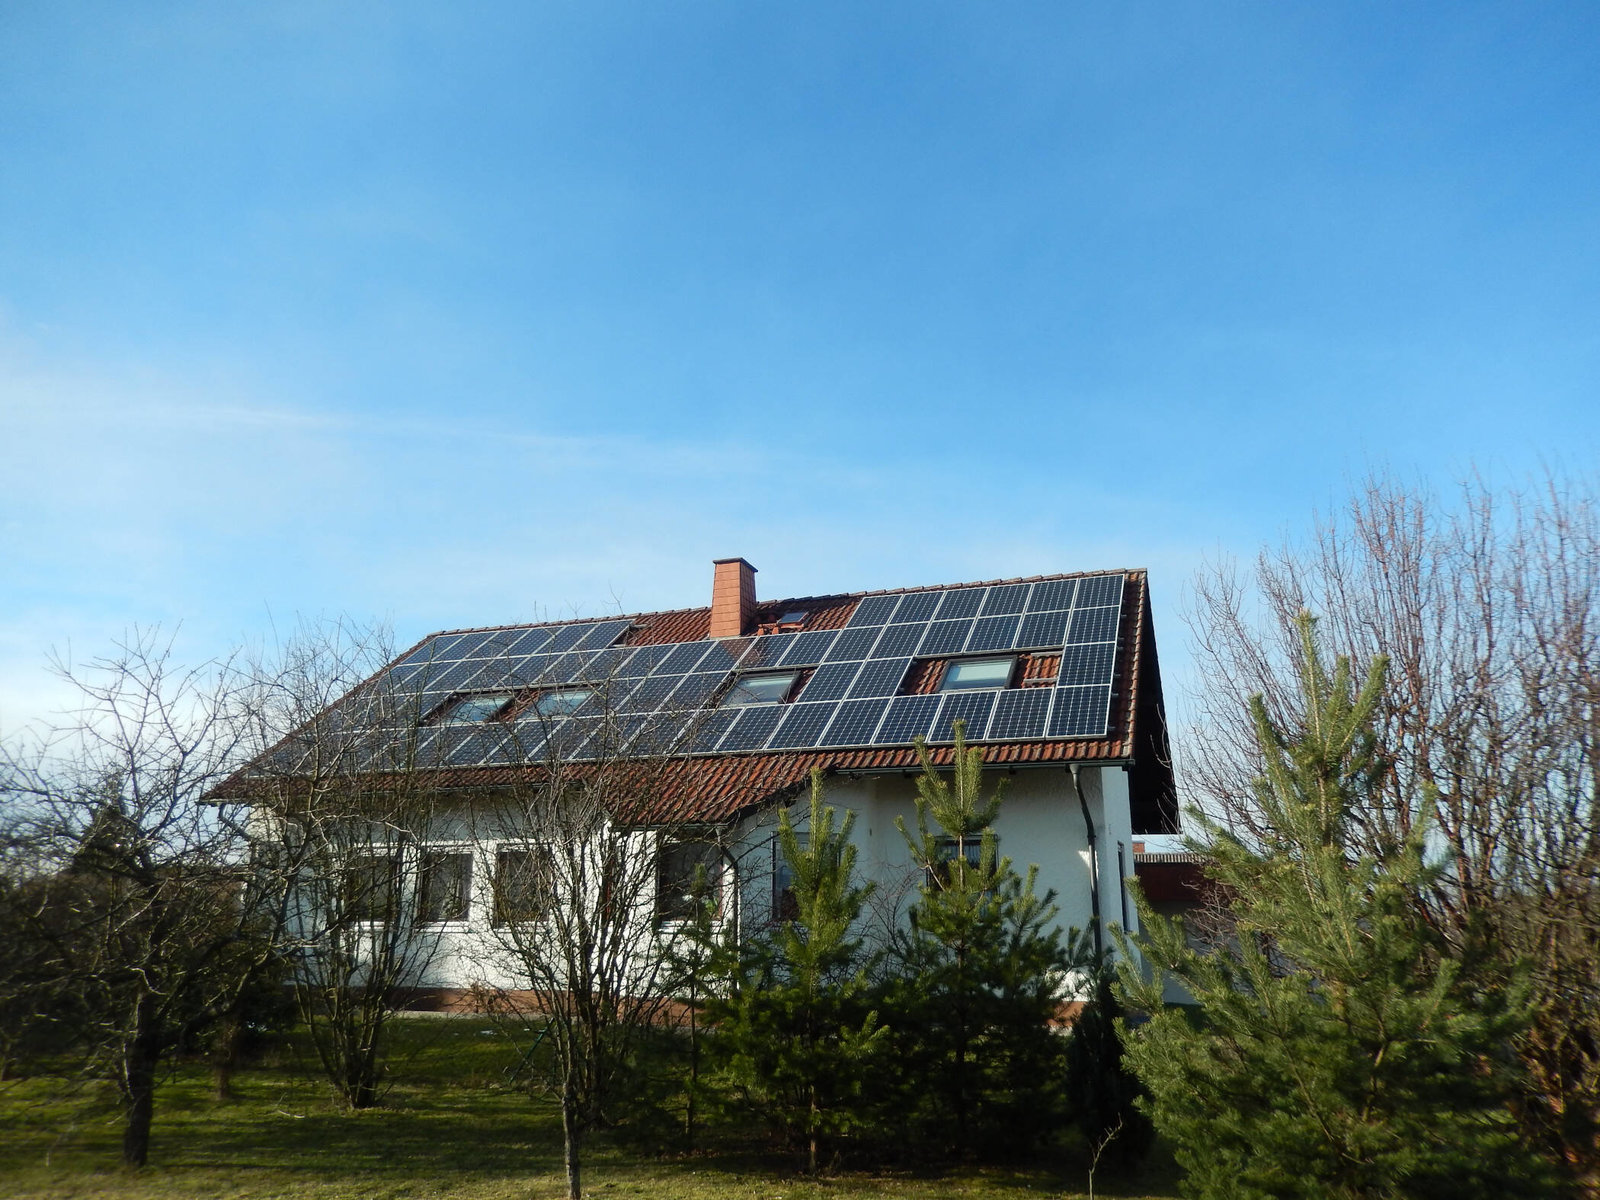 Dachfläche voll mit Photovoltaikanlage